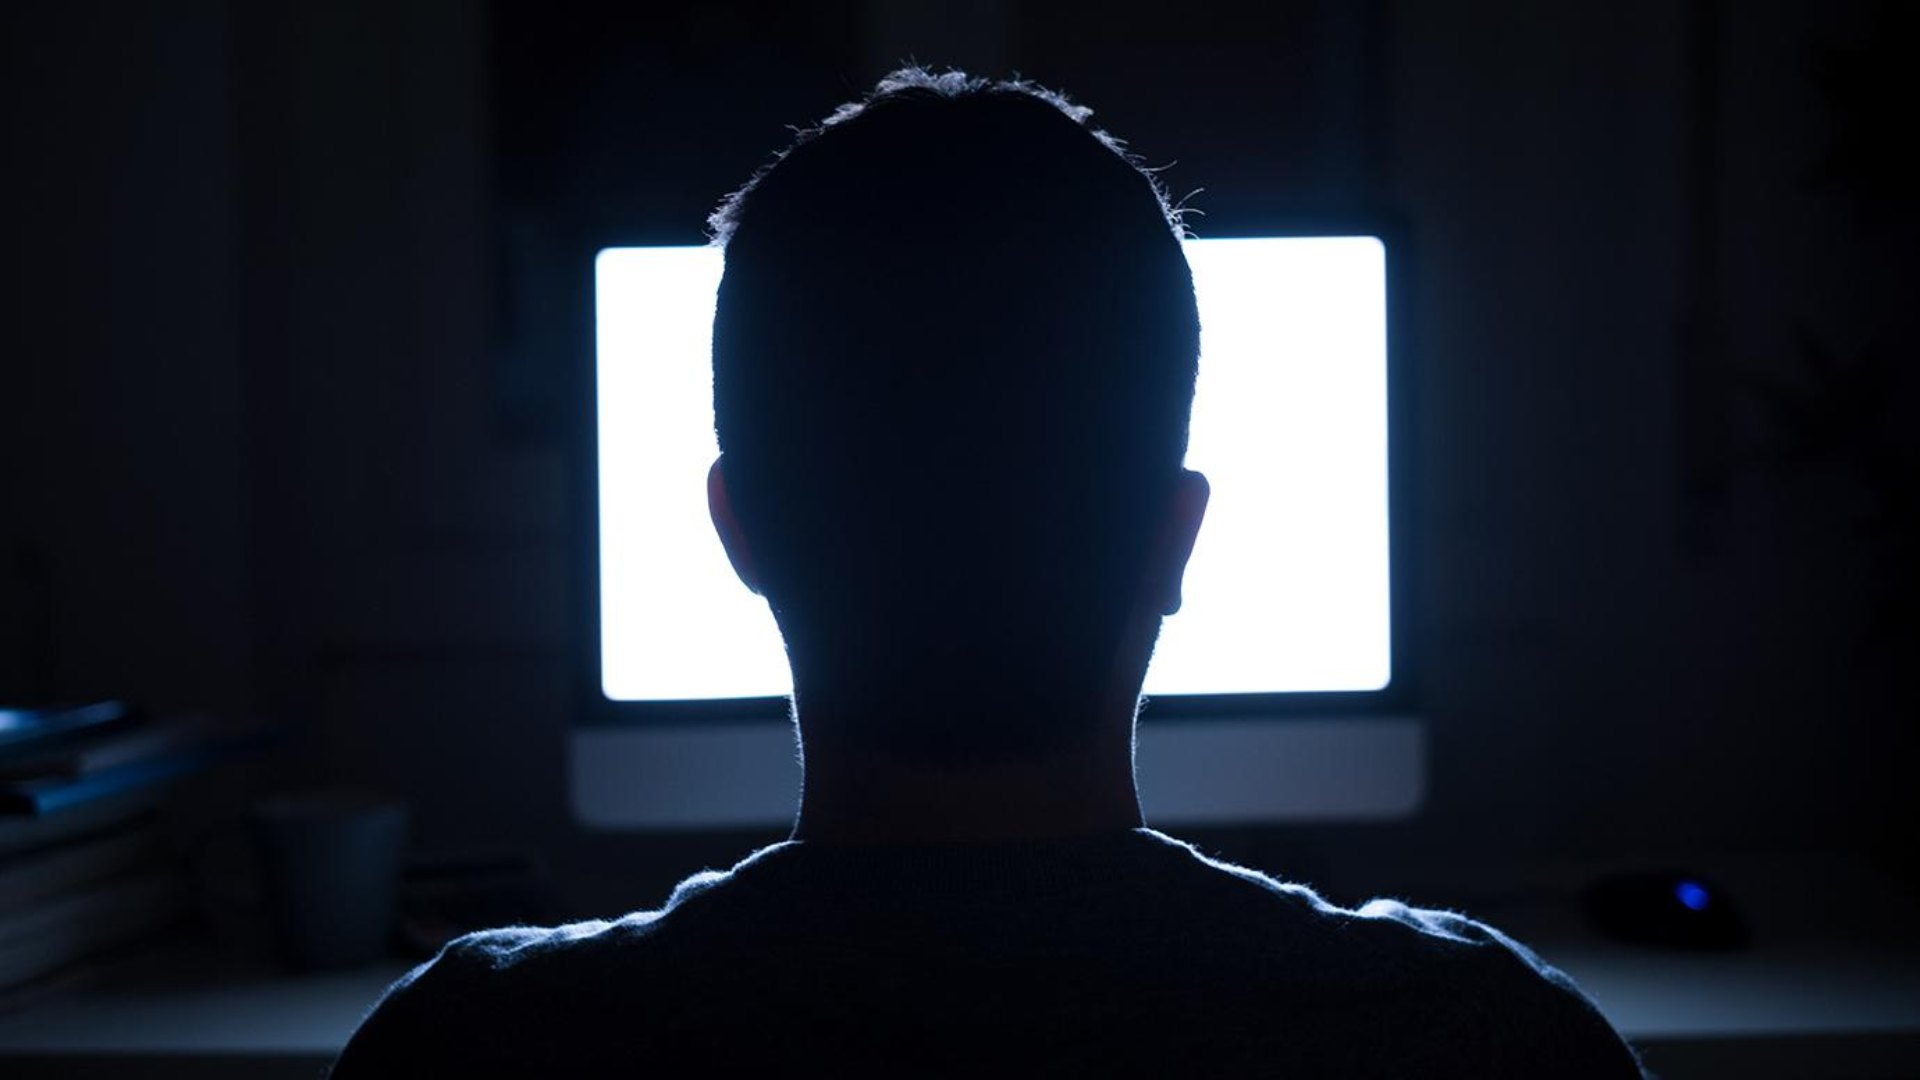 Sitios pornográficos brindarán datos de protección a menores